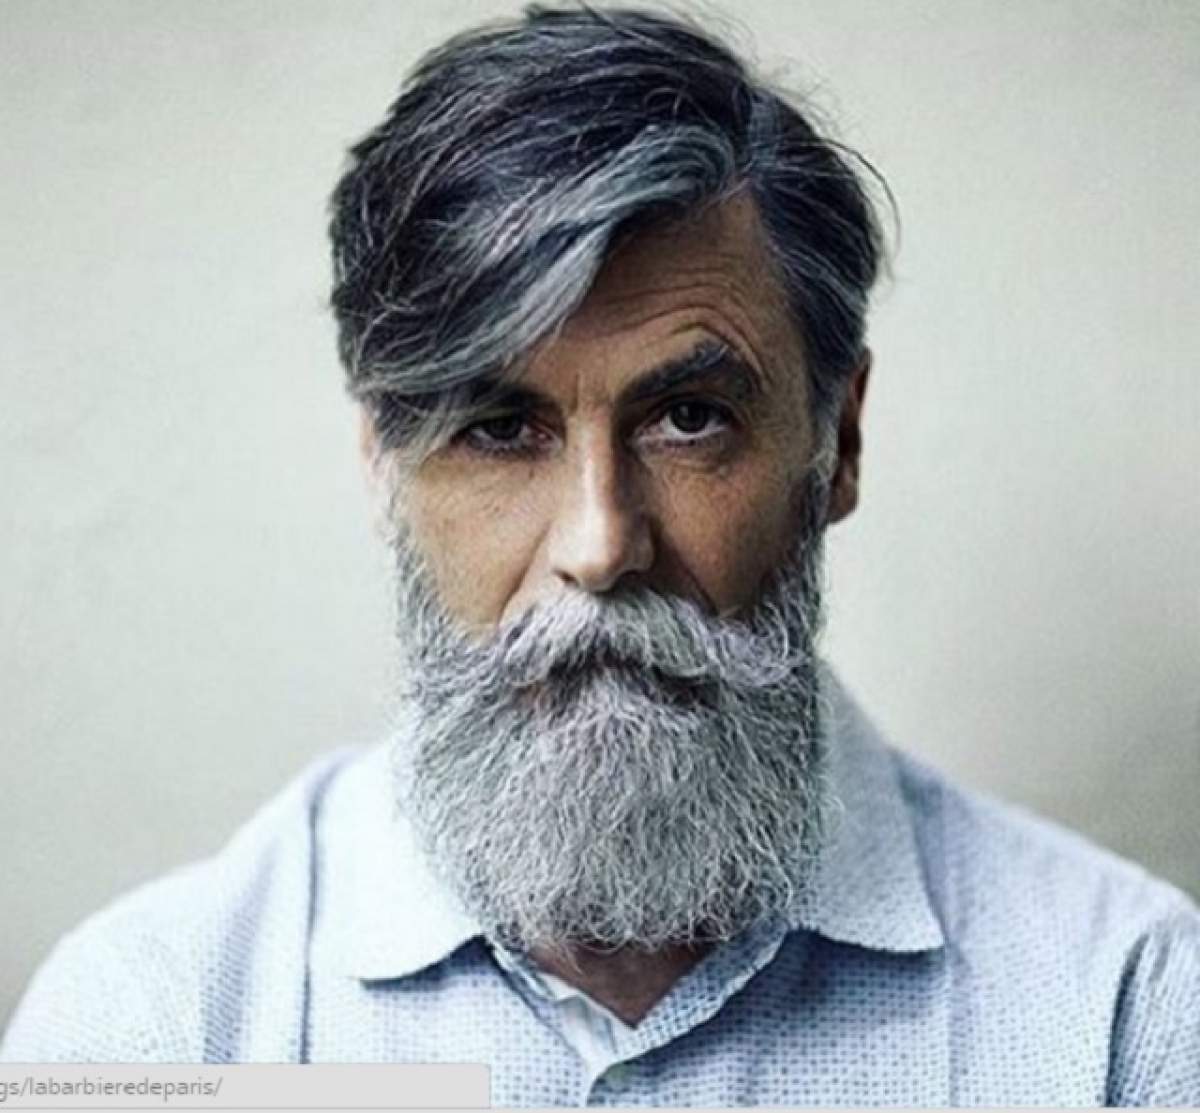 Decizia de a-și lăsa barbă i-a schimbat radical viața! Povestea care a fascinat o lume întreagă